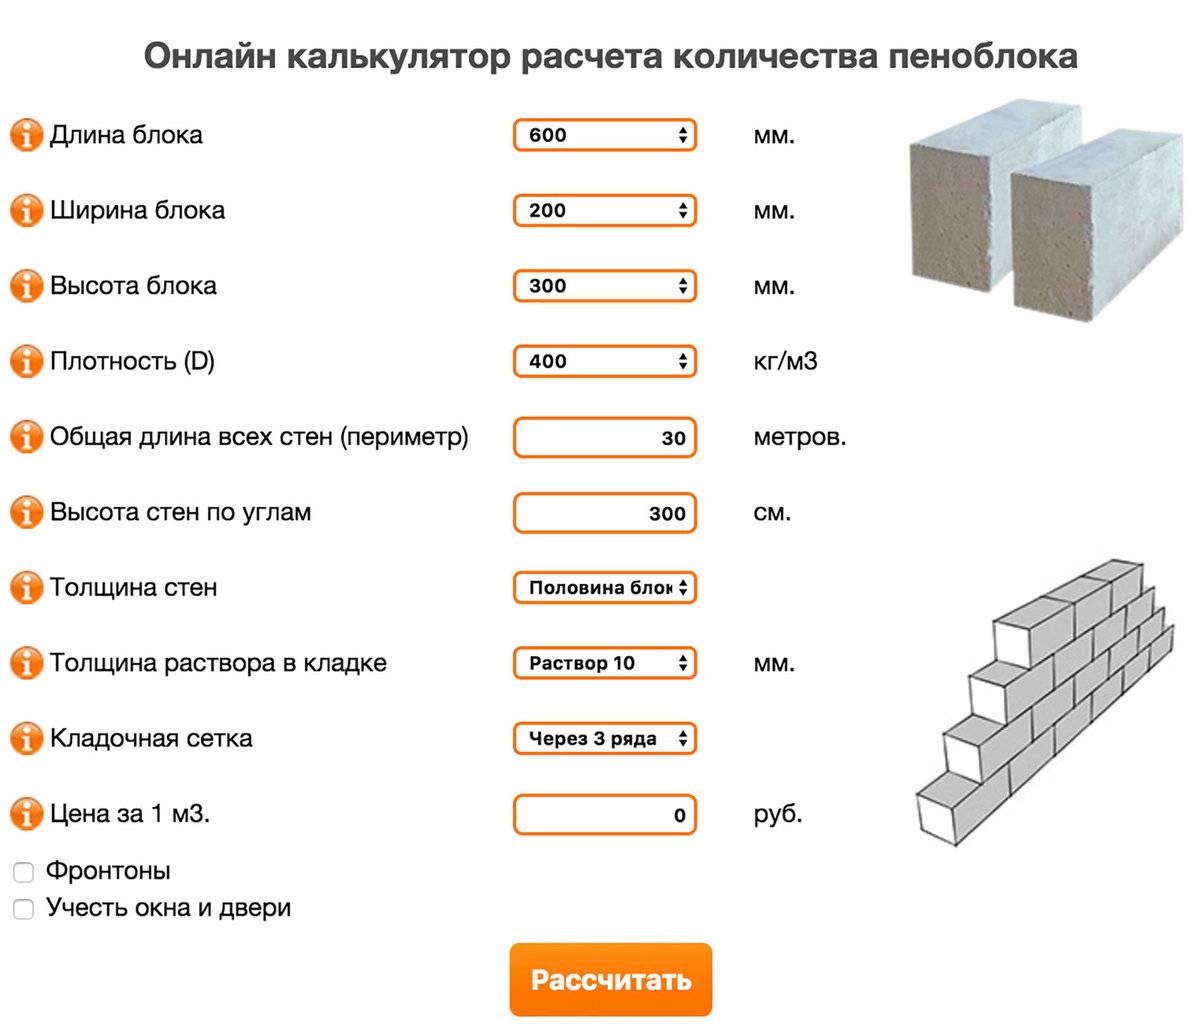 Расчет количества пеноблоков на строительства дома в примерах и задачах